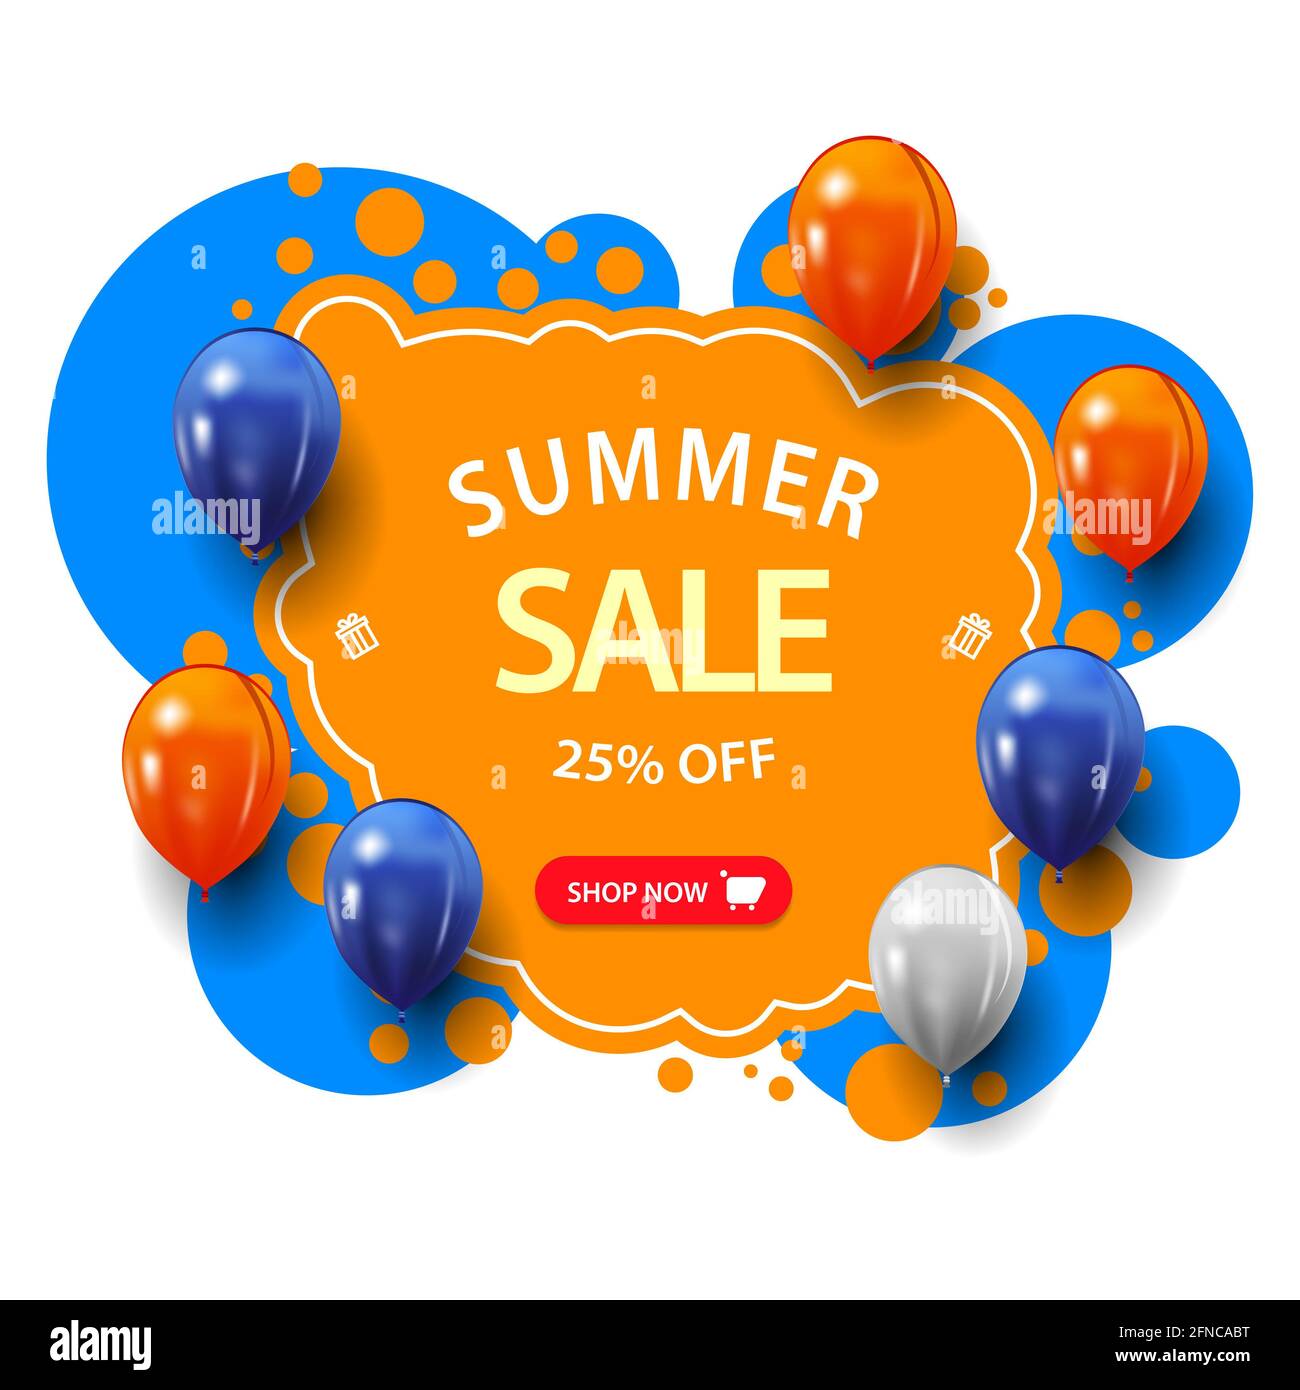 Soldes d'été, jusqu'à 25 rabais, bannière Web bleue et orange avec grande offre, bouton et ballons dans le style graffiti Banque D'Images